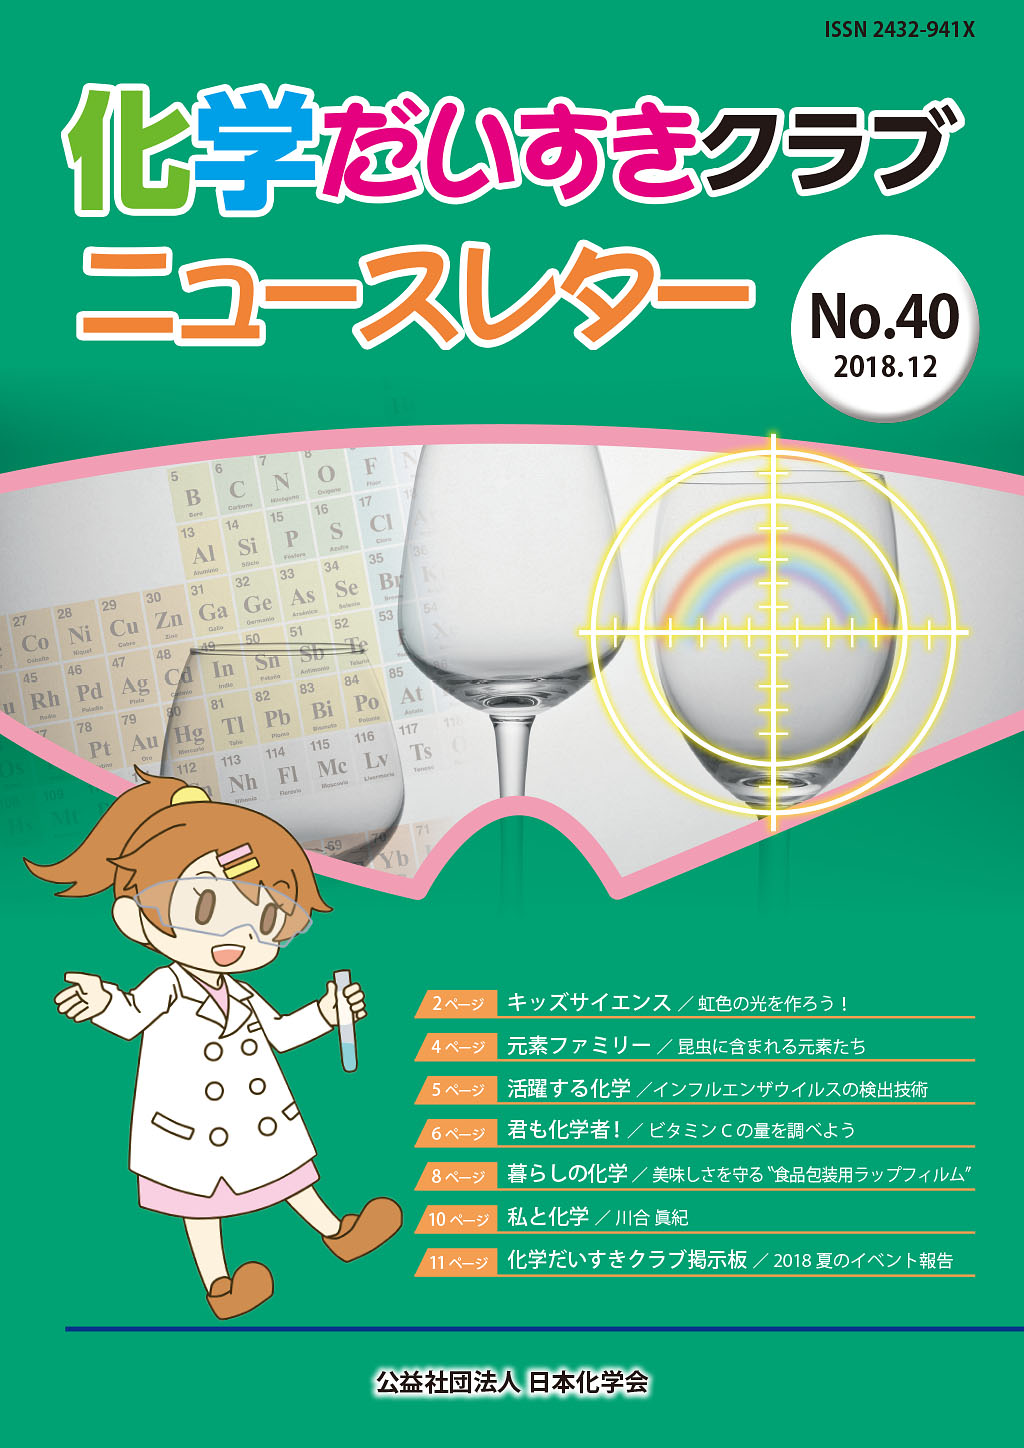 化学だいすきクラブニュースレター No.40